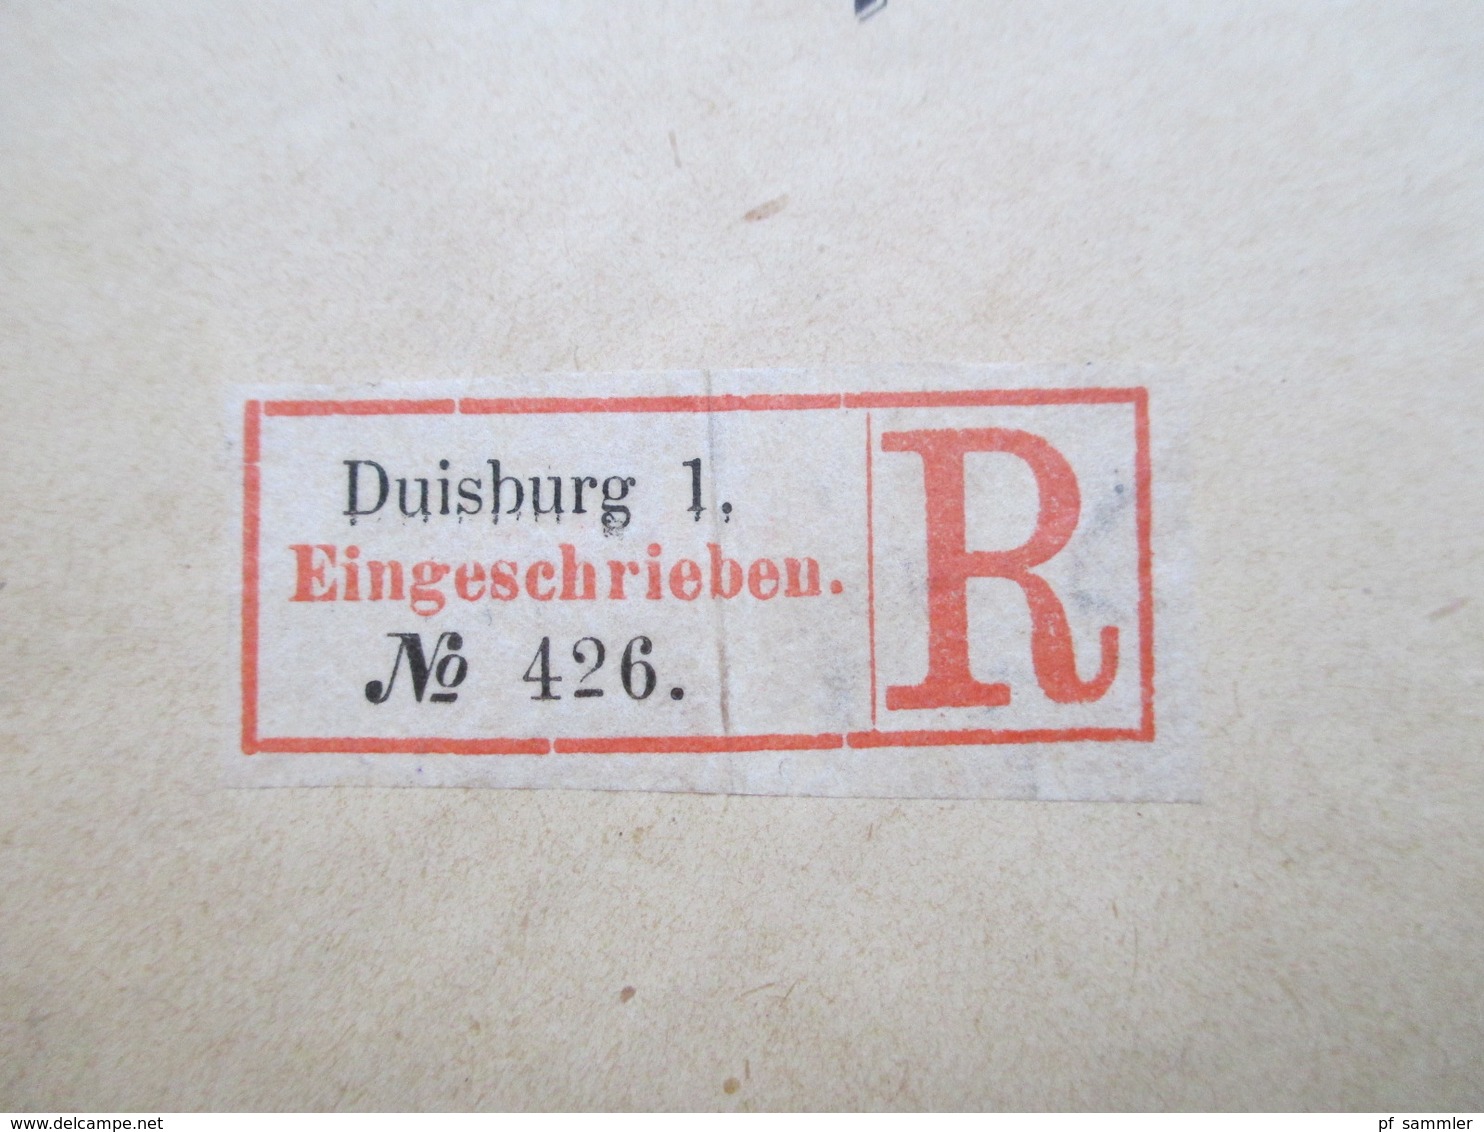 DR 1889 MiF Nr. 41 u. 42 R-Zettel Eingeschrieben Duisburg 1 Postauftrag an das Kaiserliche Postamt zu Coburg